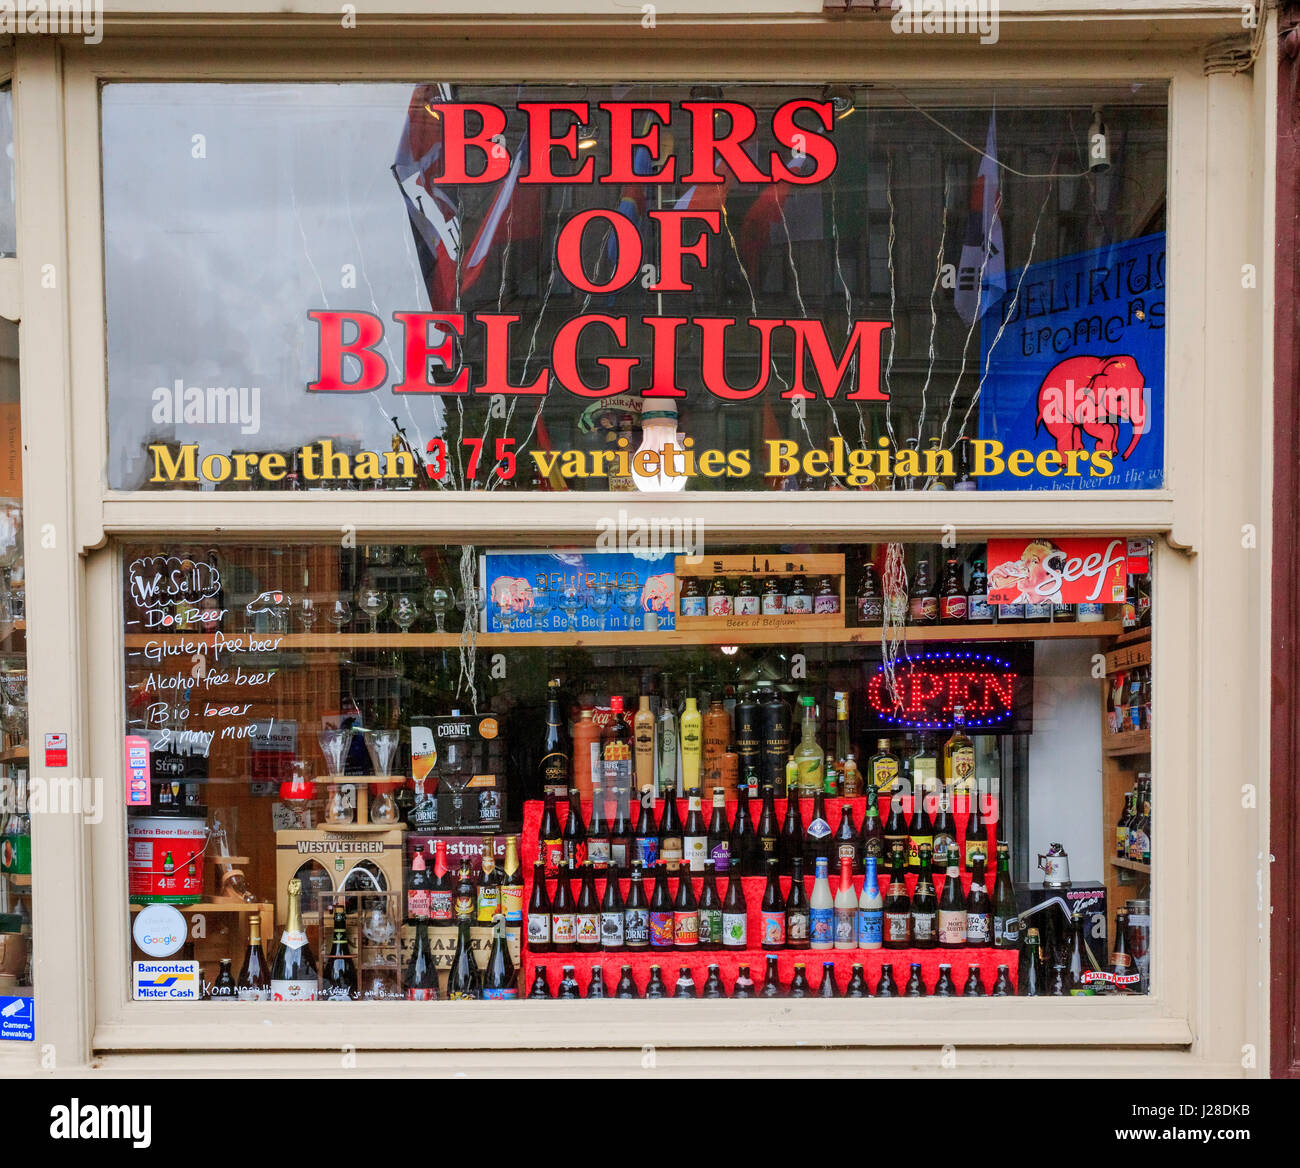 Window display of craft beers of Belgium, Antwerp Belgium Stock Photo